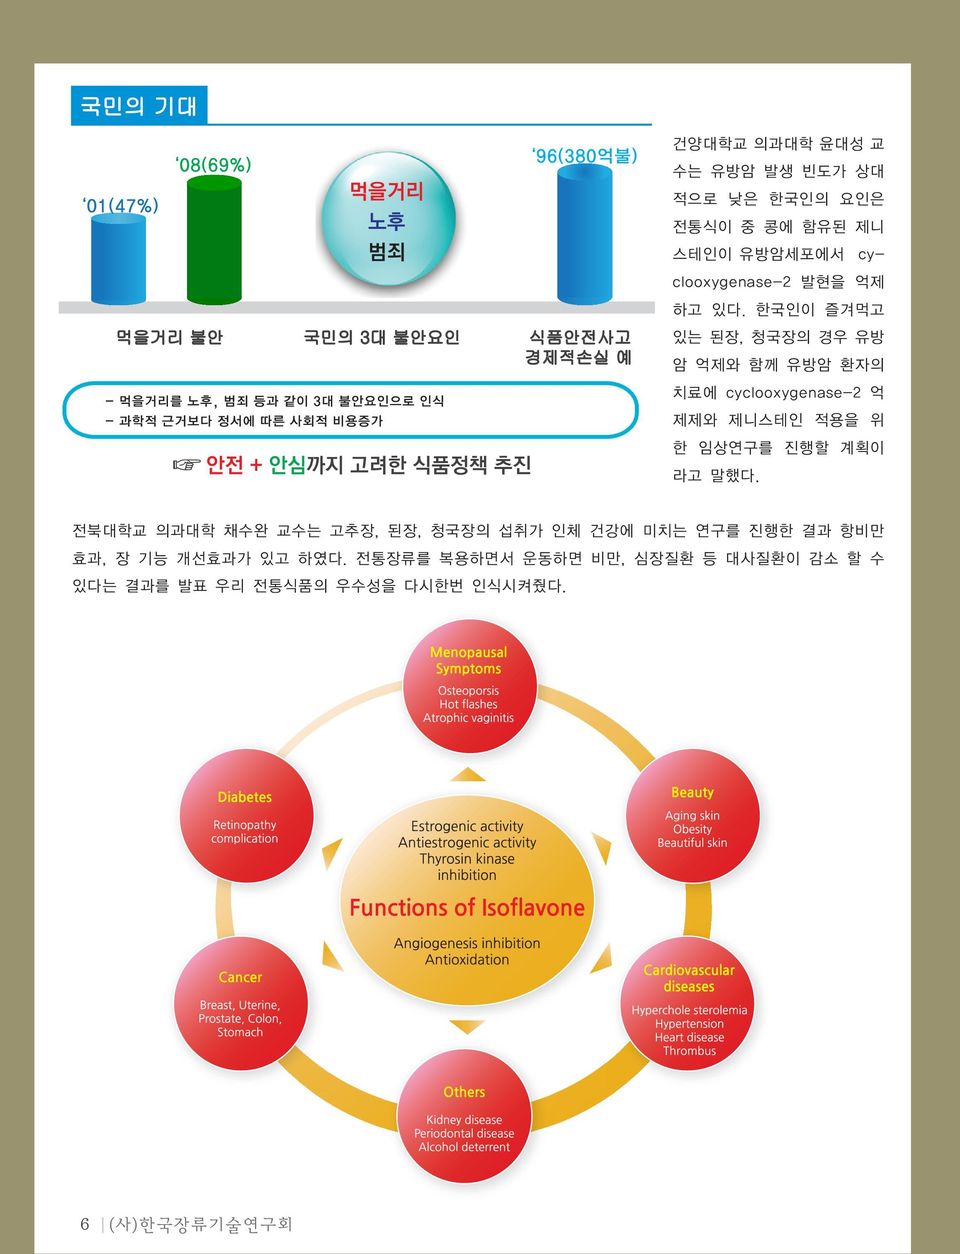 한국인이 즐겨먹고 있는 된장, 청국장의 경우 유방 암 억제와 함께 유방암 환자의 치료에 cyclooxygenase-2 억 제제와 제니스테인 적용을 위 한 임상연구를 진행할 계획이